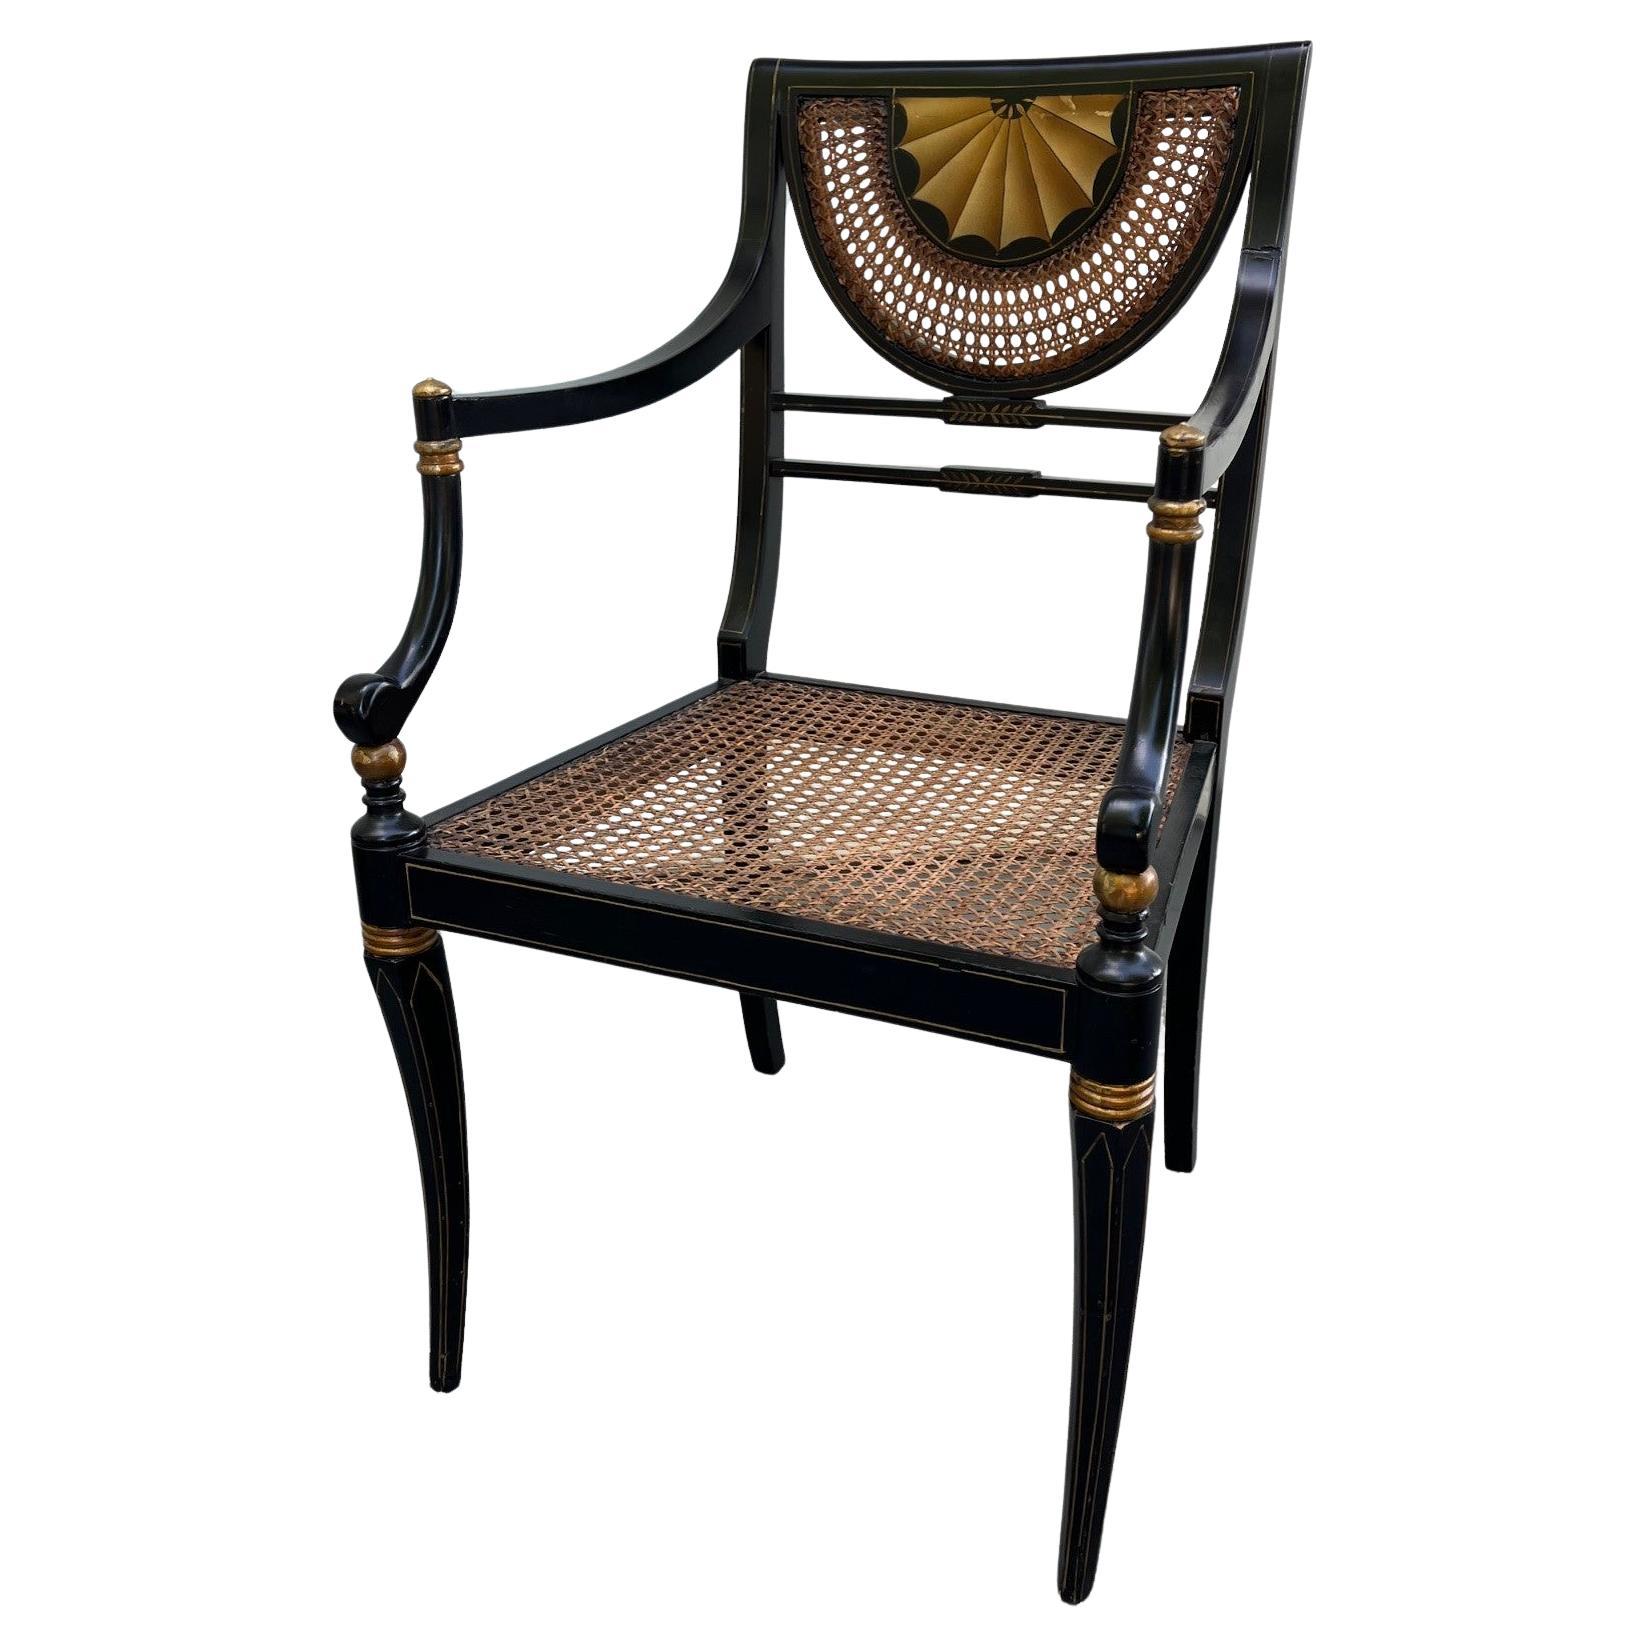 Ebonisierter Vintage-Sessel im Regency-Stil mit Sitz aus Schilfrohr.